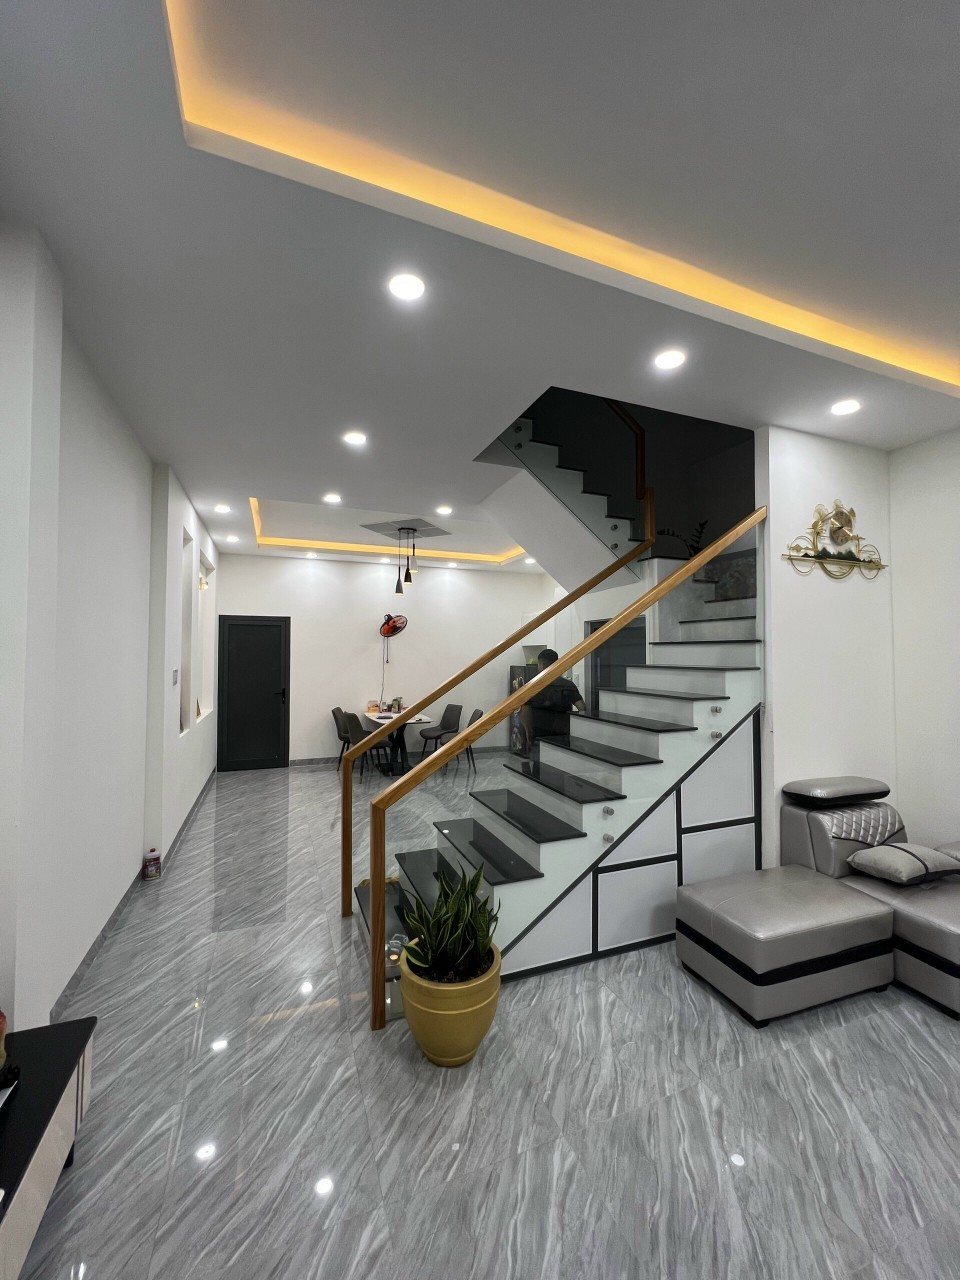 Cho thuê nhà 2 tầng gần sân bóng Phước Long mới xây, đầy đủ nội thất chỉ 15tr/ tháng 0966838679